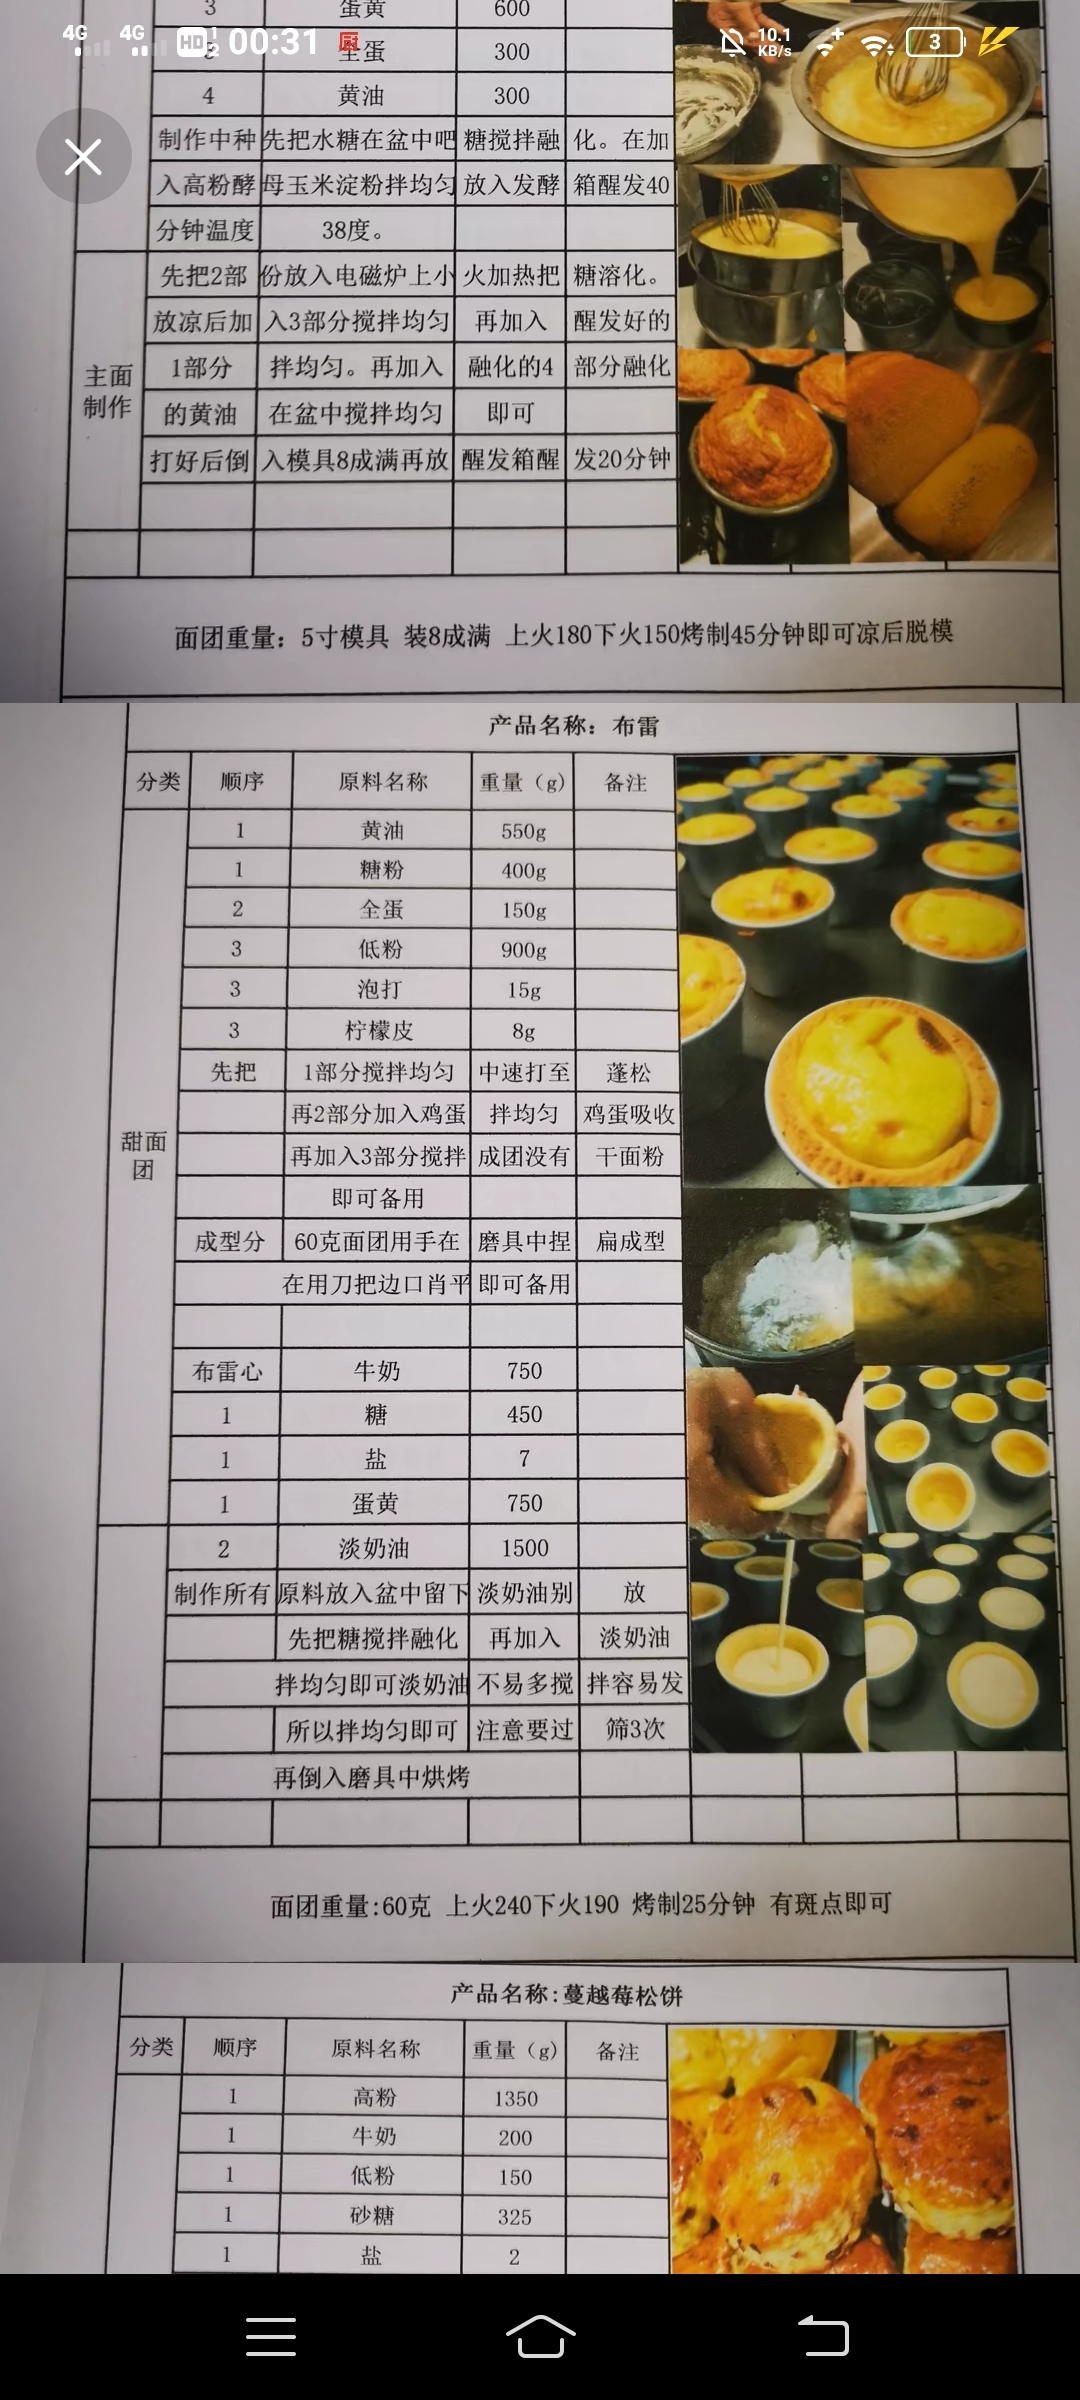 上海疫情严重。辛辛苦苦开的蛋糕店倒闭了。配方分享给有用的人的做法 步骤27